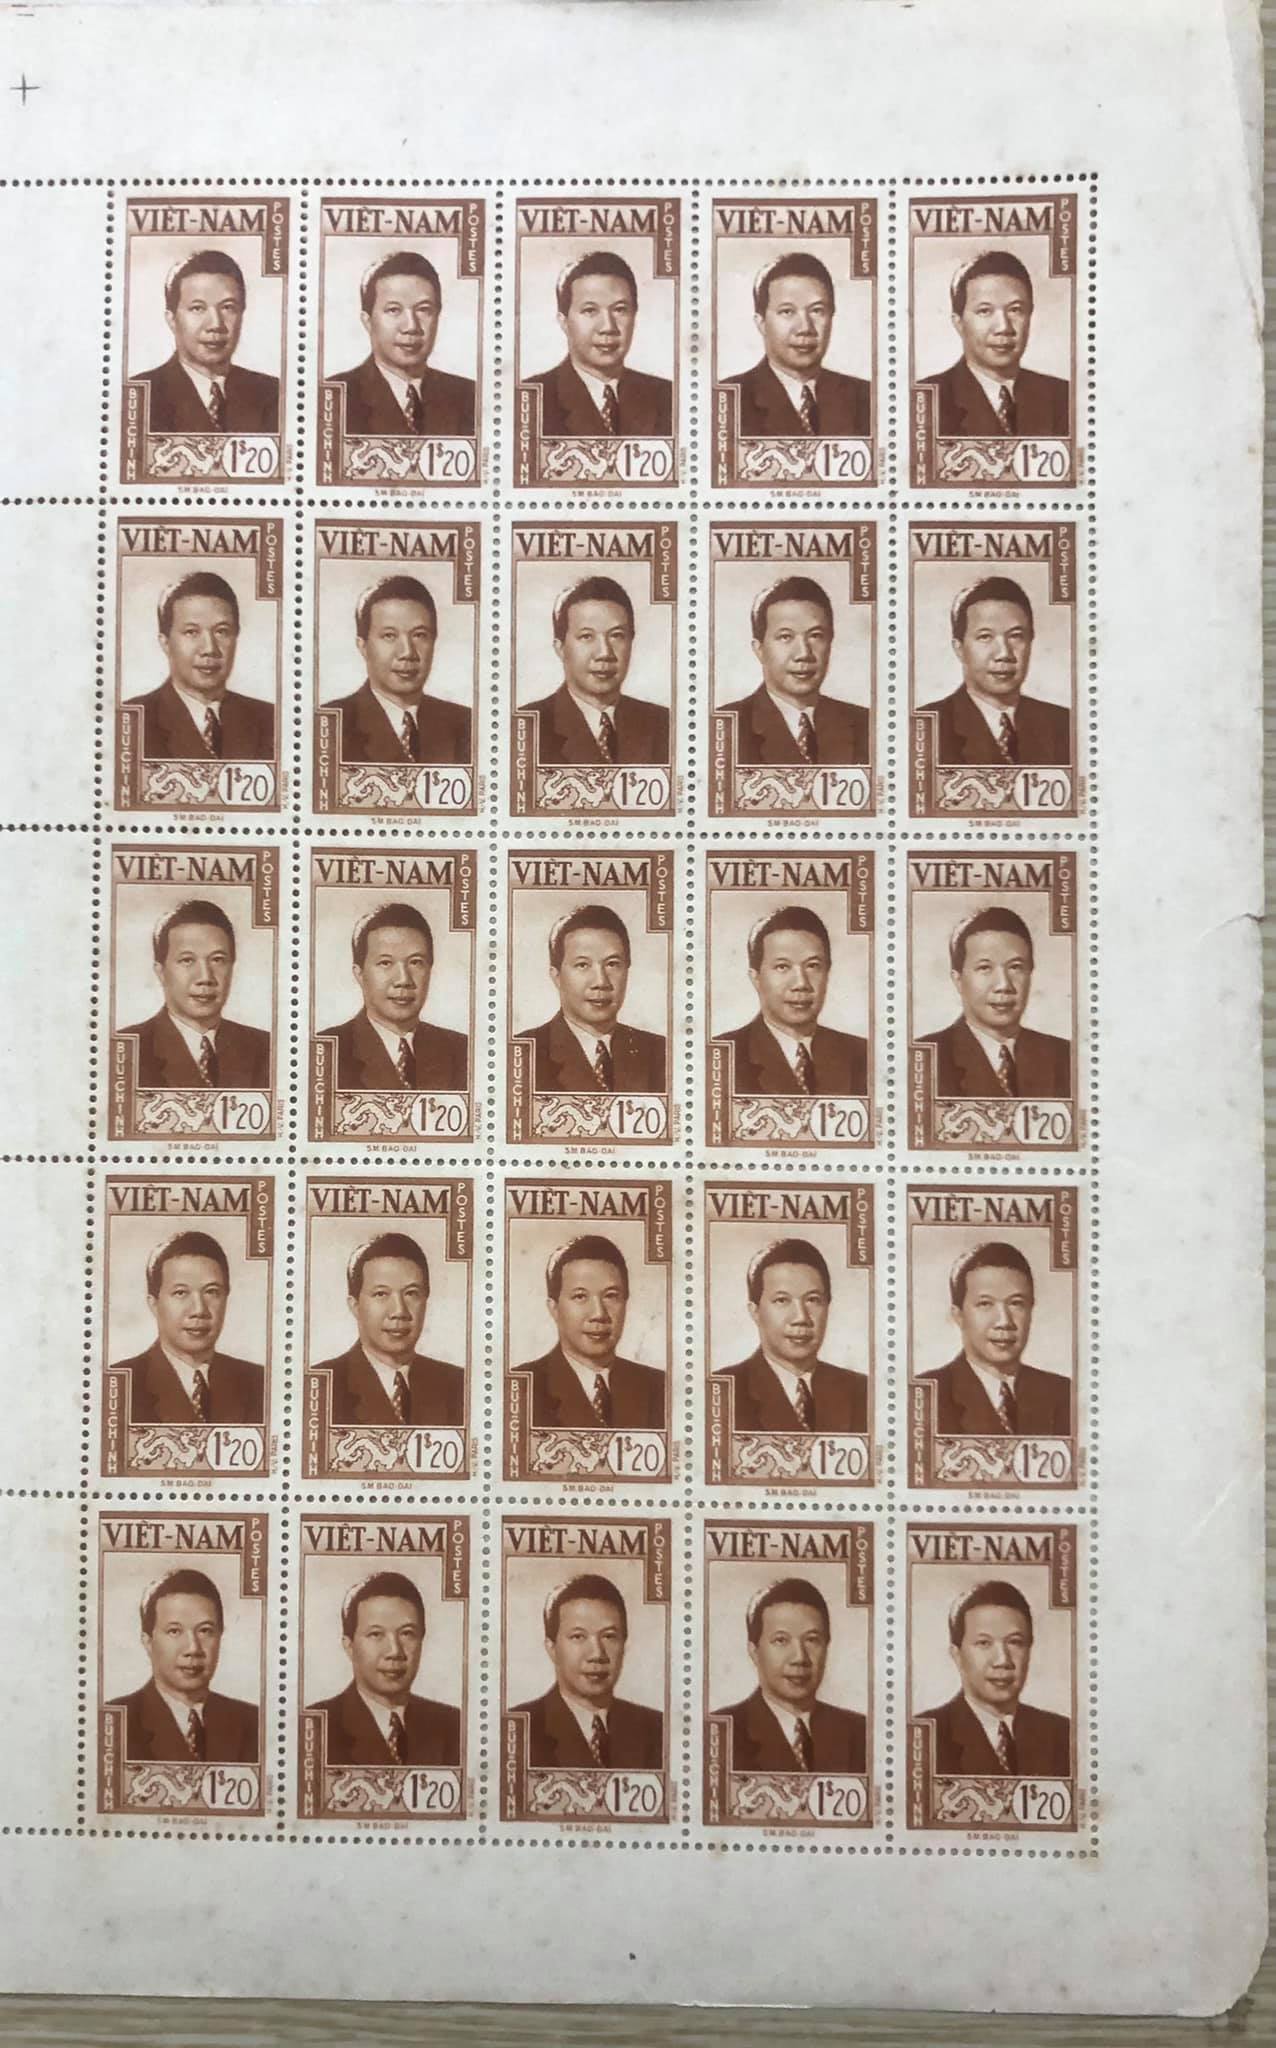 Bloc tem sống Đông Dương nguyên khối 50 con tem vua Bảo Đại (màu nâu), vị vua cuối cùng của phong kiến Việt Nam